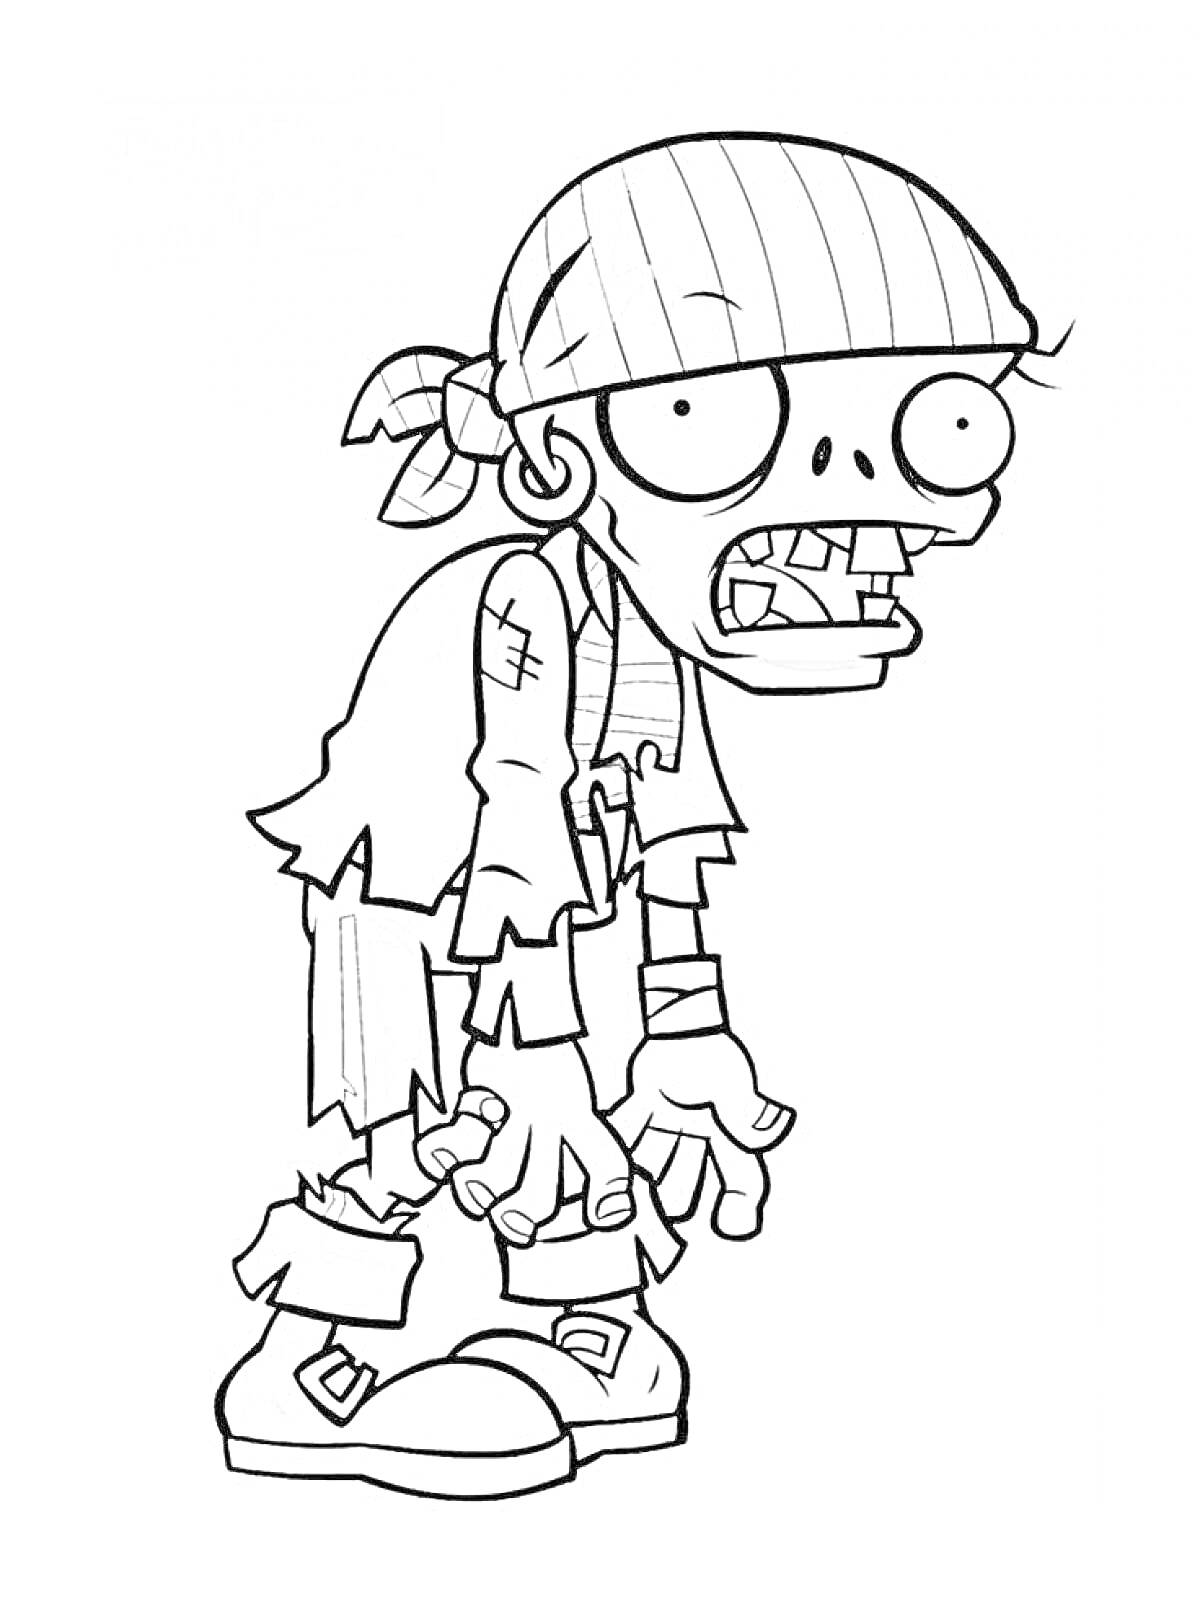 Раскраска Зомби с повязкой на голове, широкими глазами и рваными одеждами.